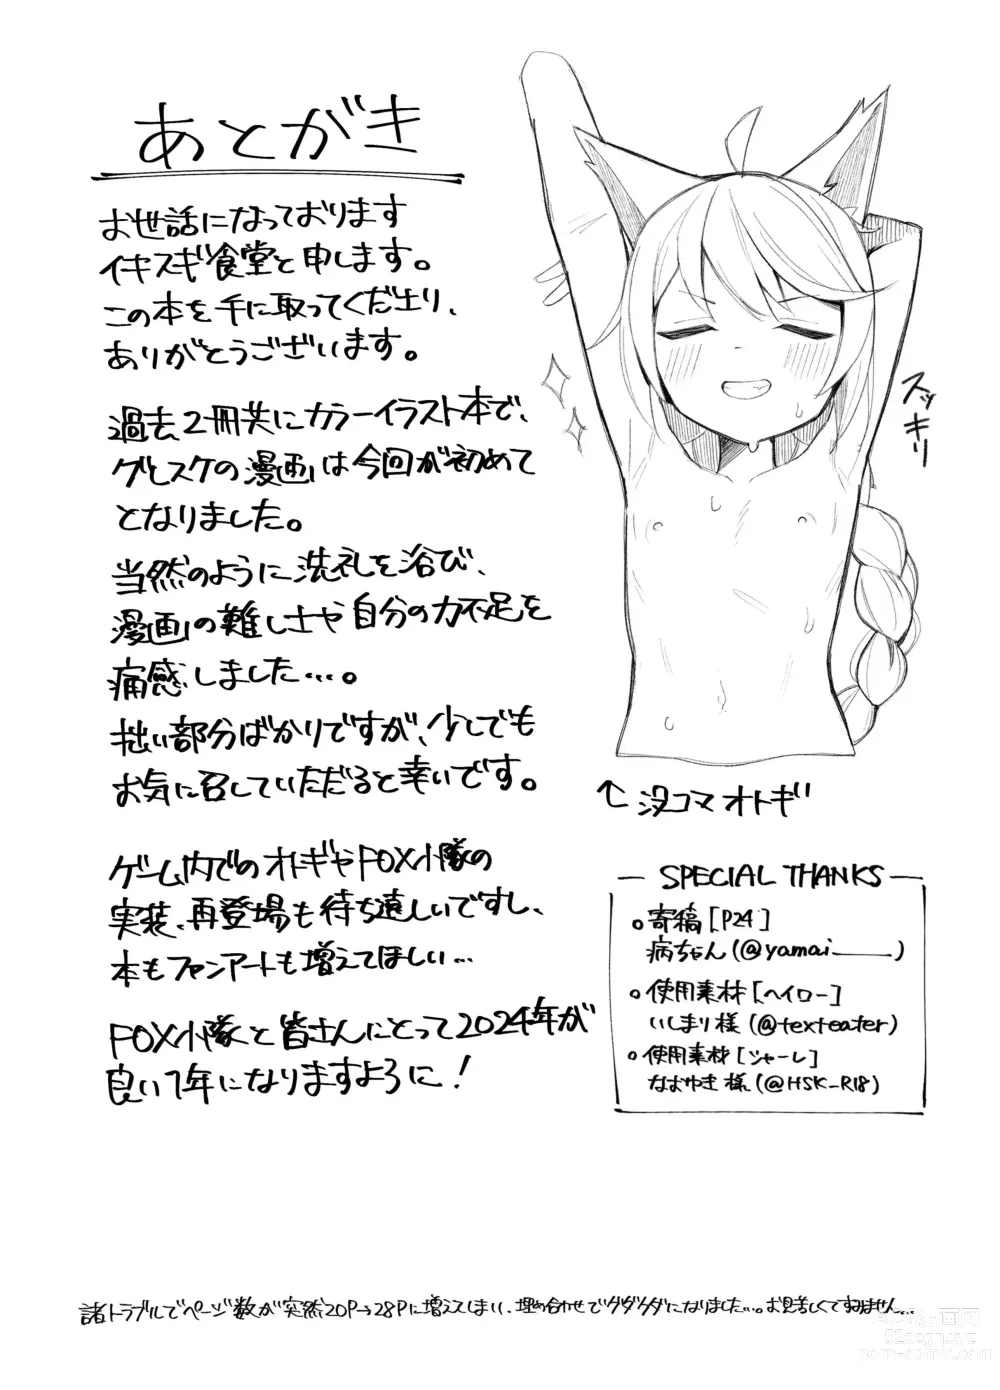 Page 25 of doujinshi Tai 4 You Ryouhou